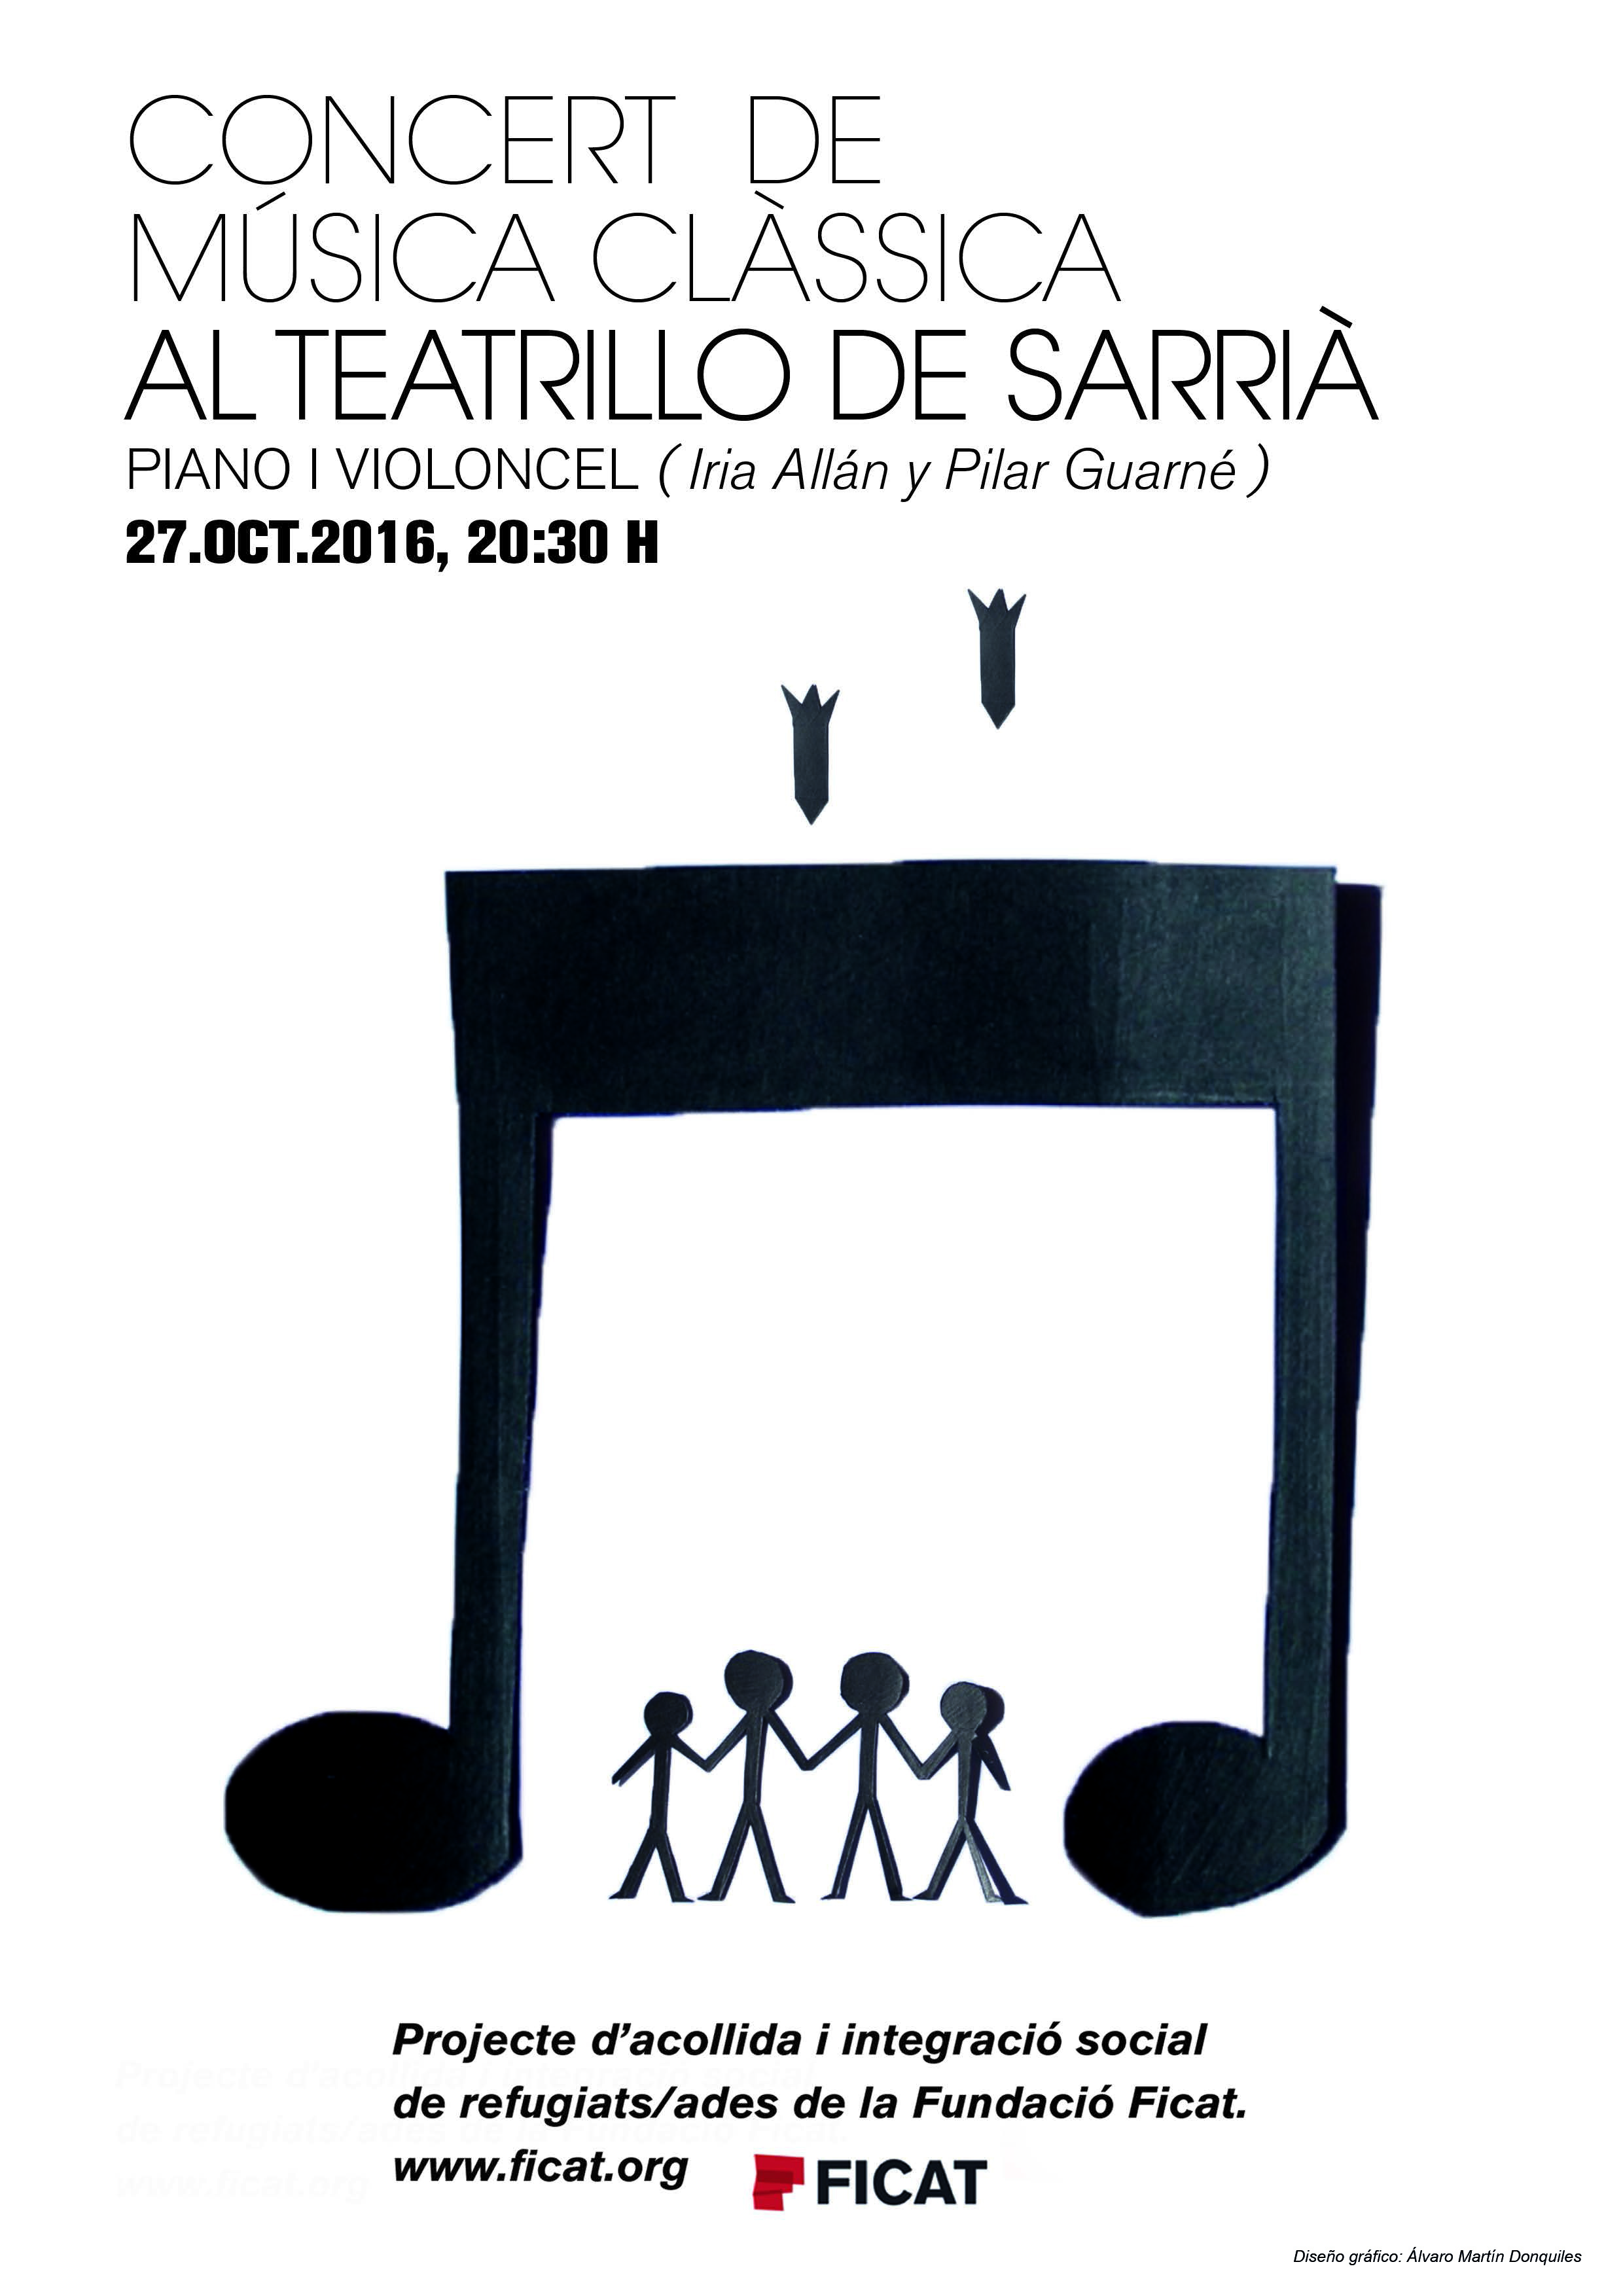 Concert de música clássica al Teatrillo de Sarrià